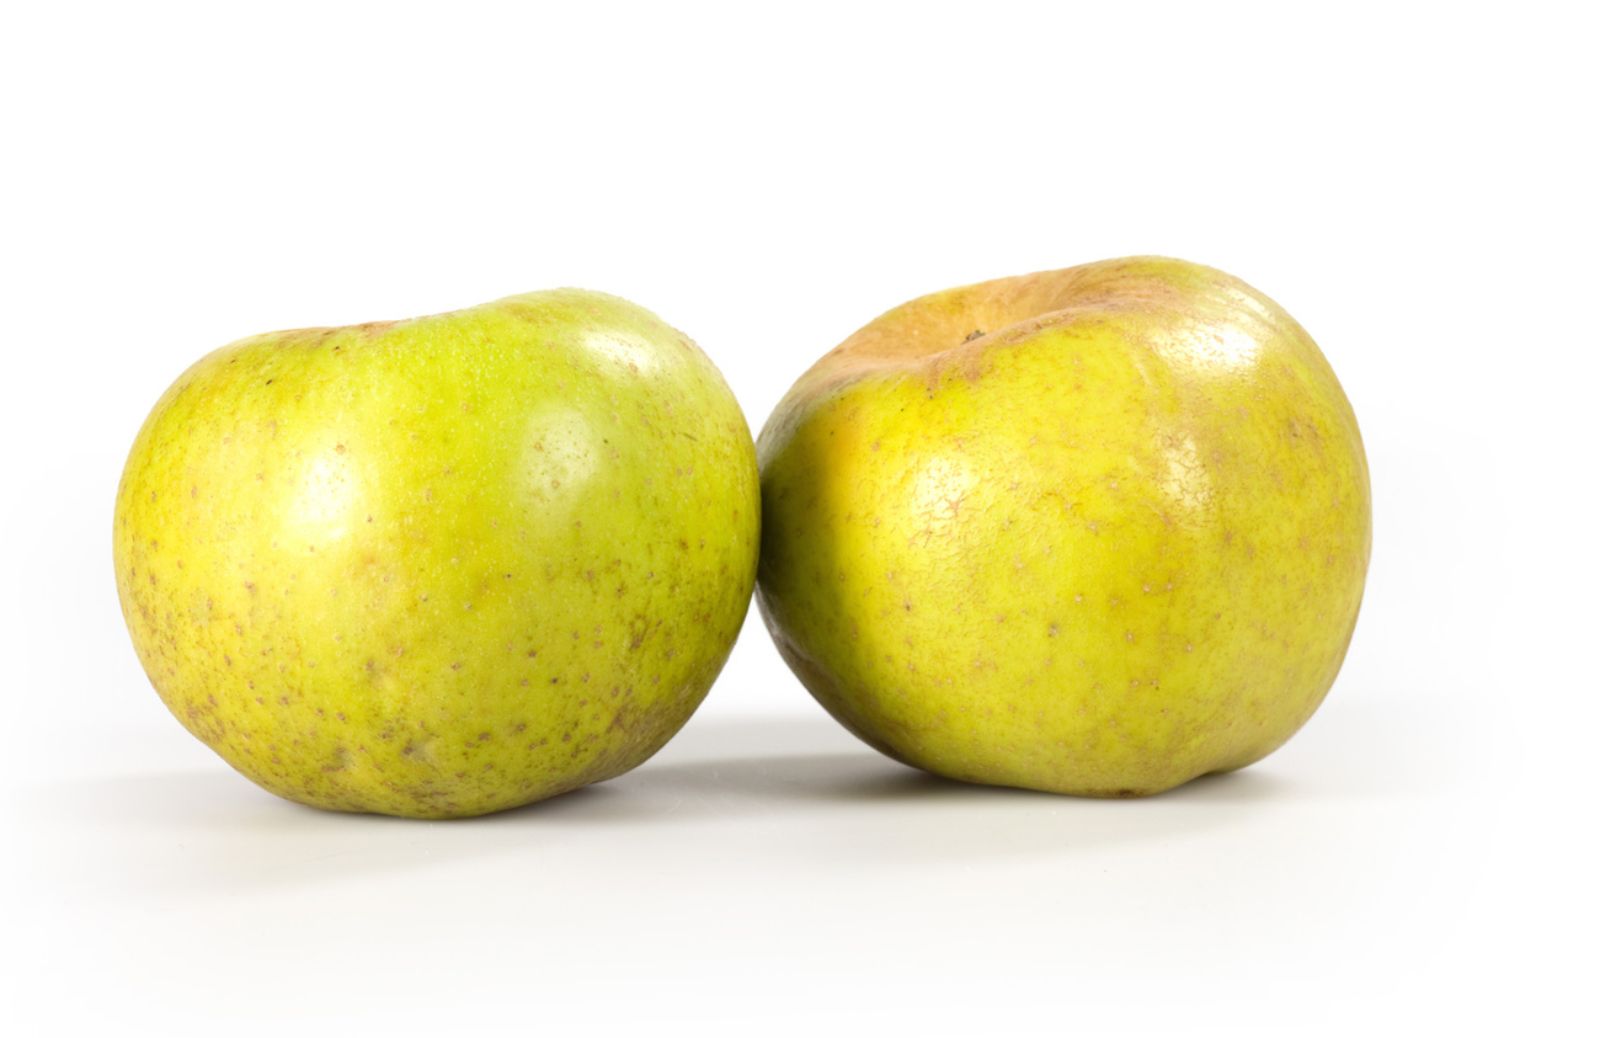 Cuore al sicuro con due mele al giorno: riducono il colesterolo cattivo